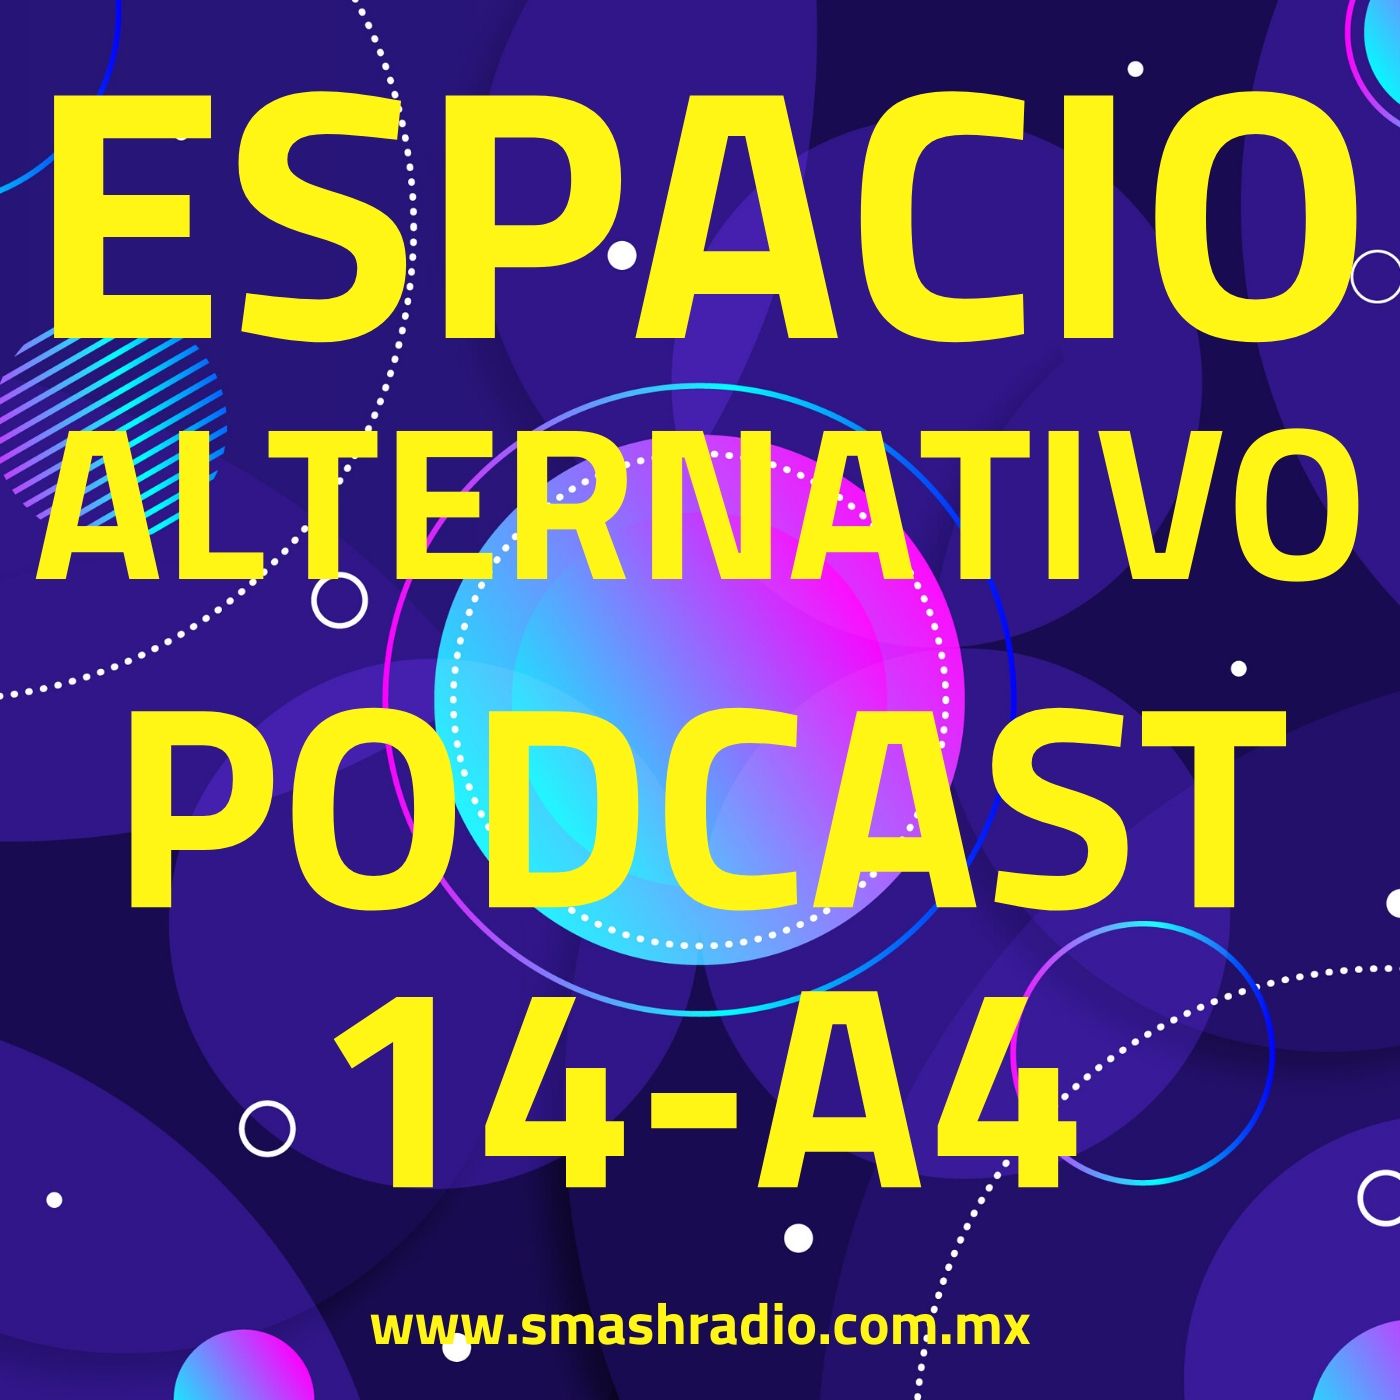 Espacio_Alternativo_Podcast_14-a4